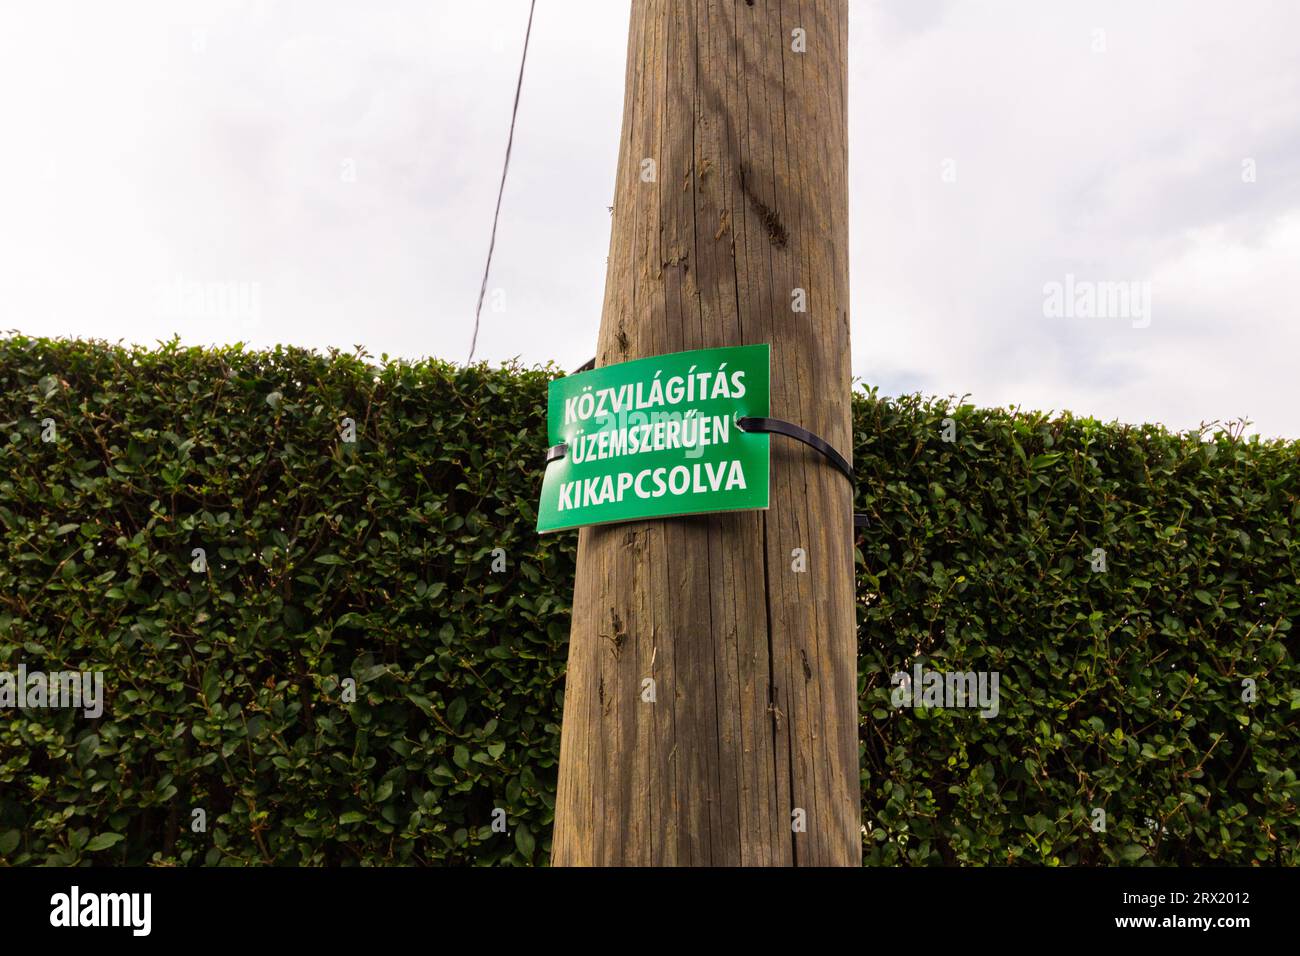 Schild „Kozvilagitas uzemszeruen kikapcsolva“ (Straßenlaterne aus Energiespargründen ausgeschaltet), Sopron, Ungarn Stockfoto